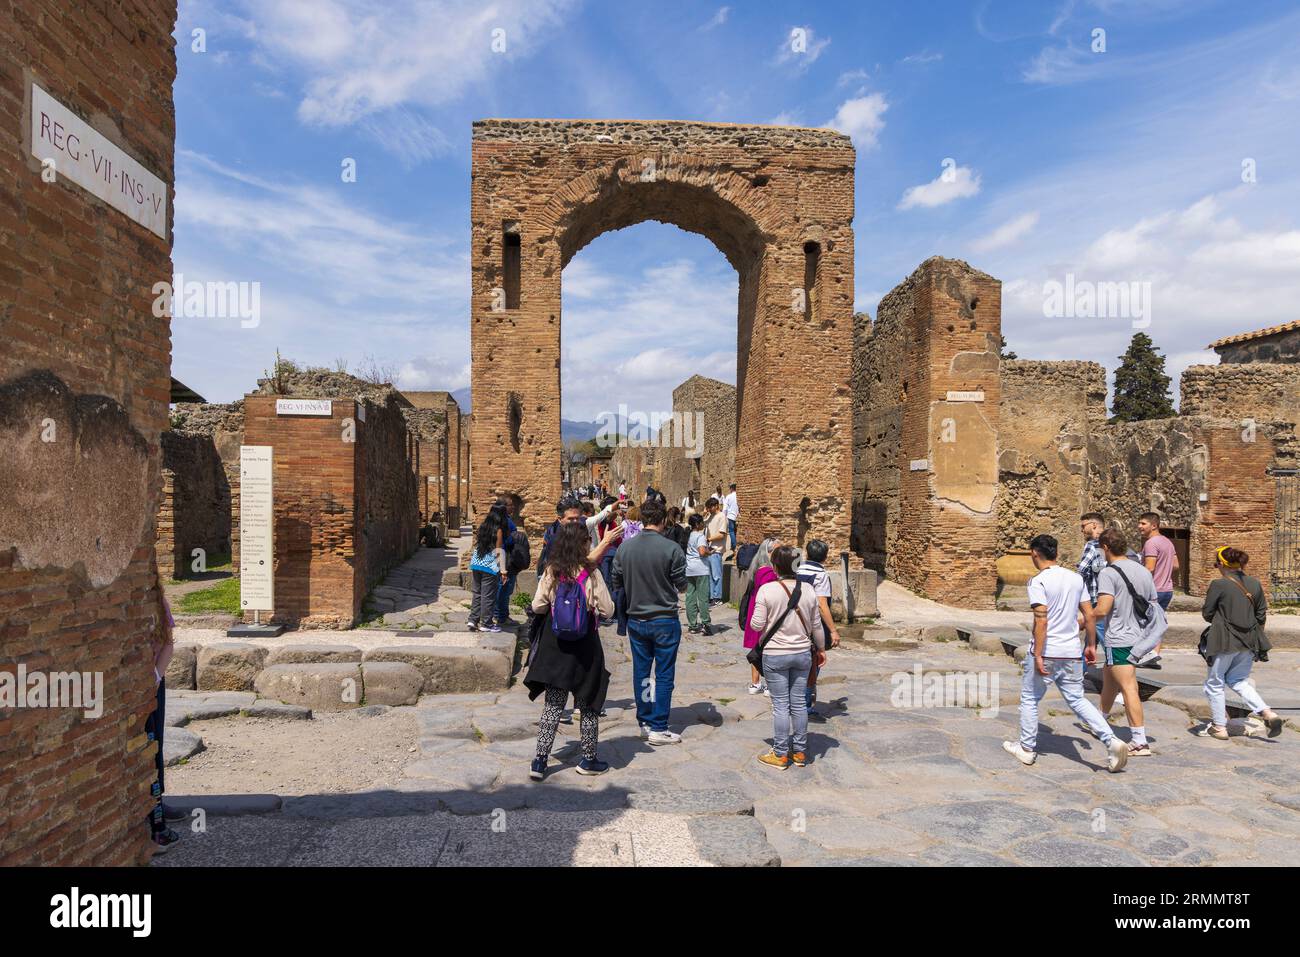 Sito archeologico di Pompei, Campania, Italia. Arch of Caligula è il nome attuale. È stato variamente conosciuto come l'Arco di Tiberio, l'Arco di Foto Stock